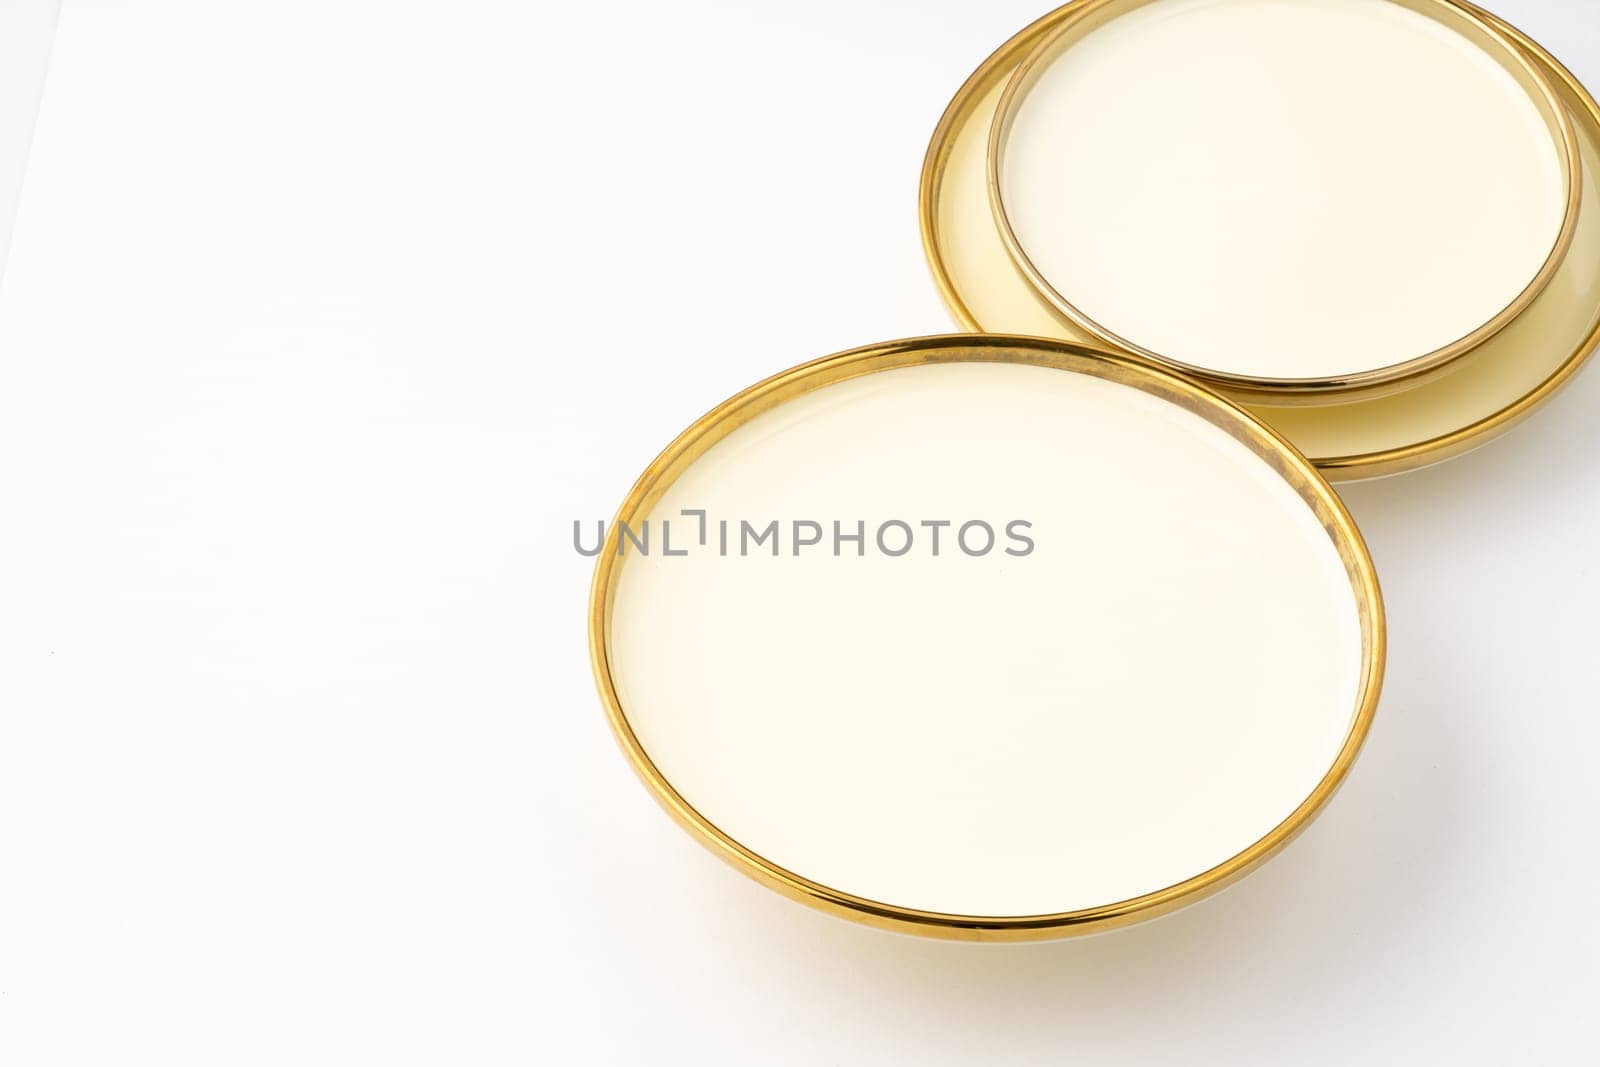 A golden luxury ceramic kitchen utensils on a white background